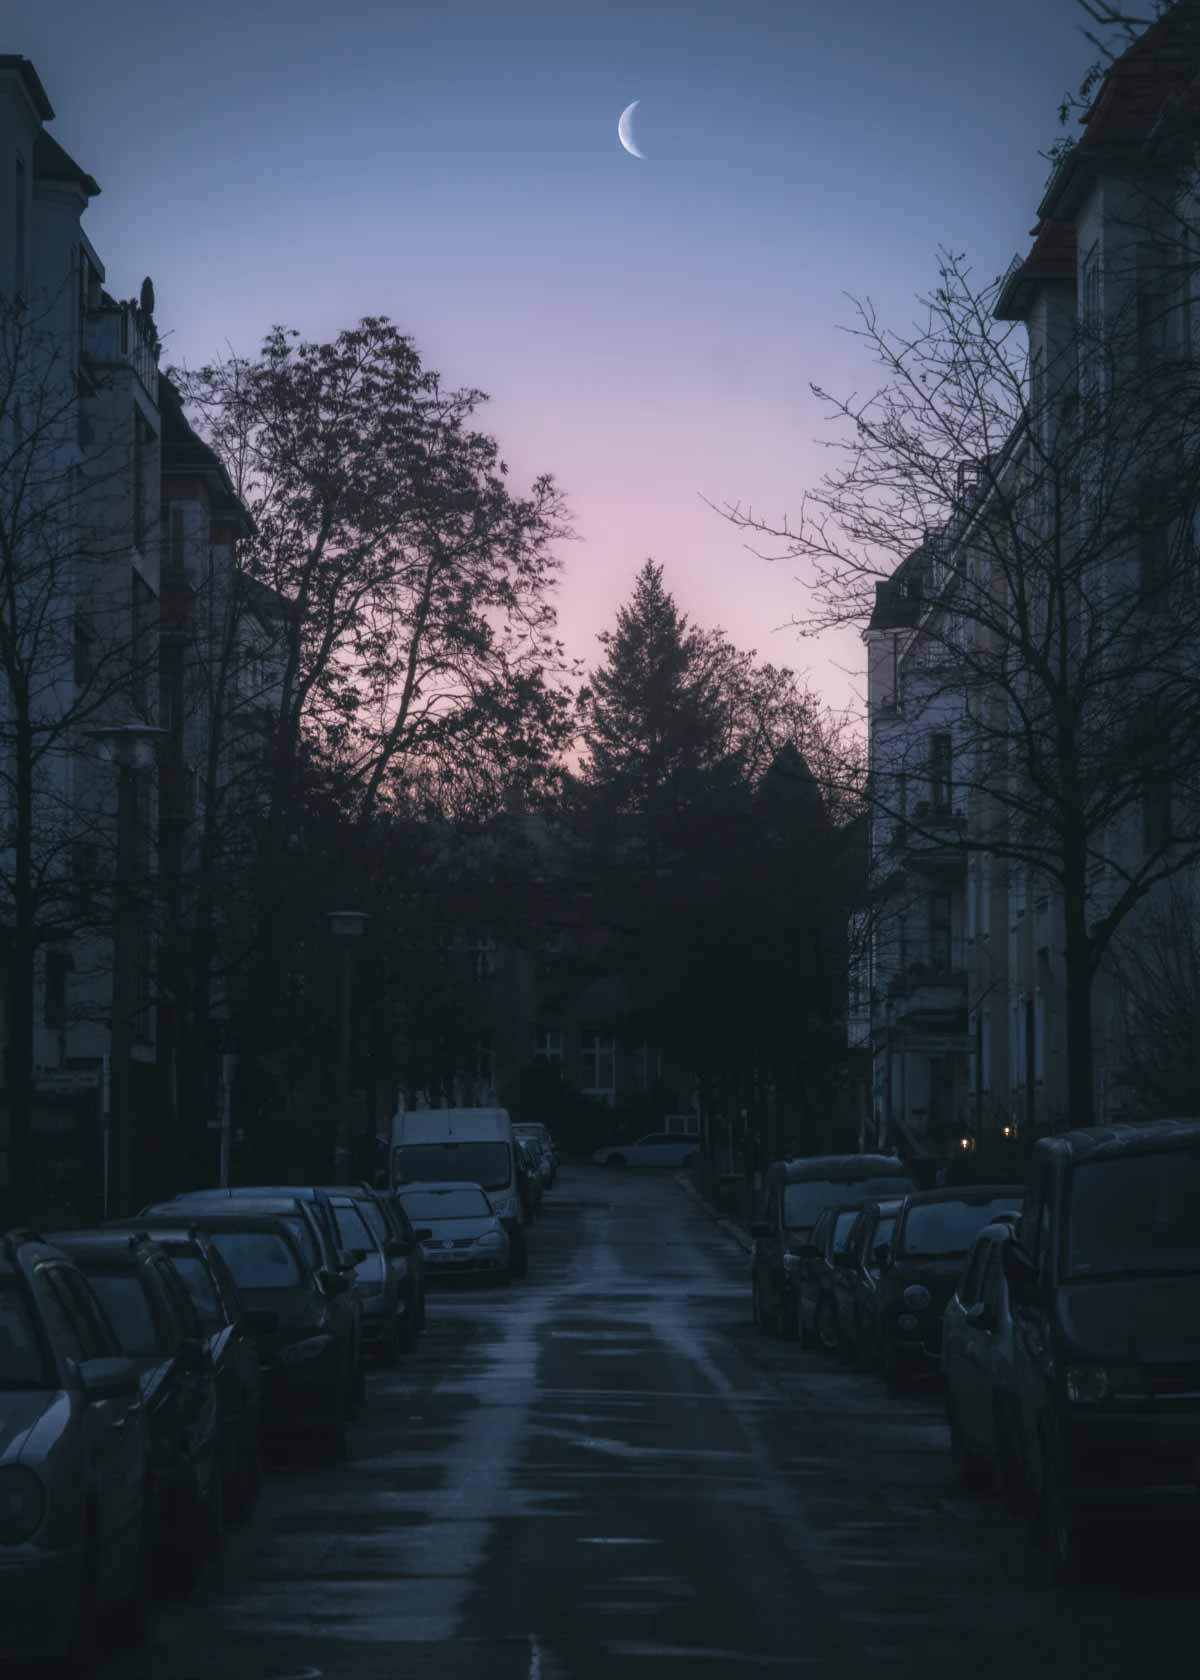 Dawn in Berlin, Germany